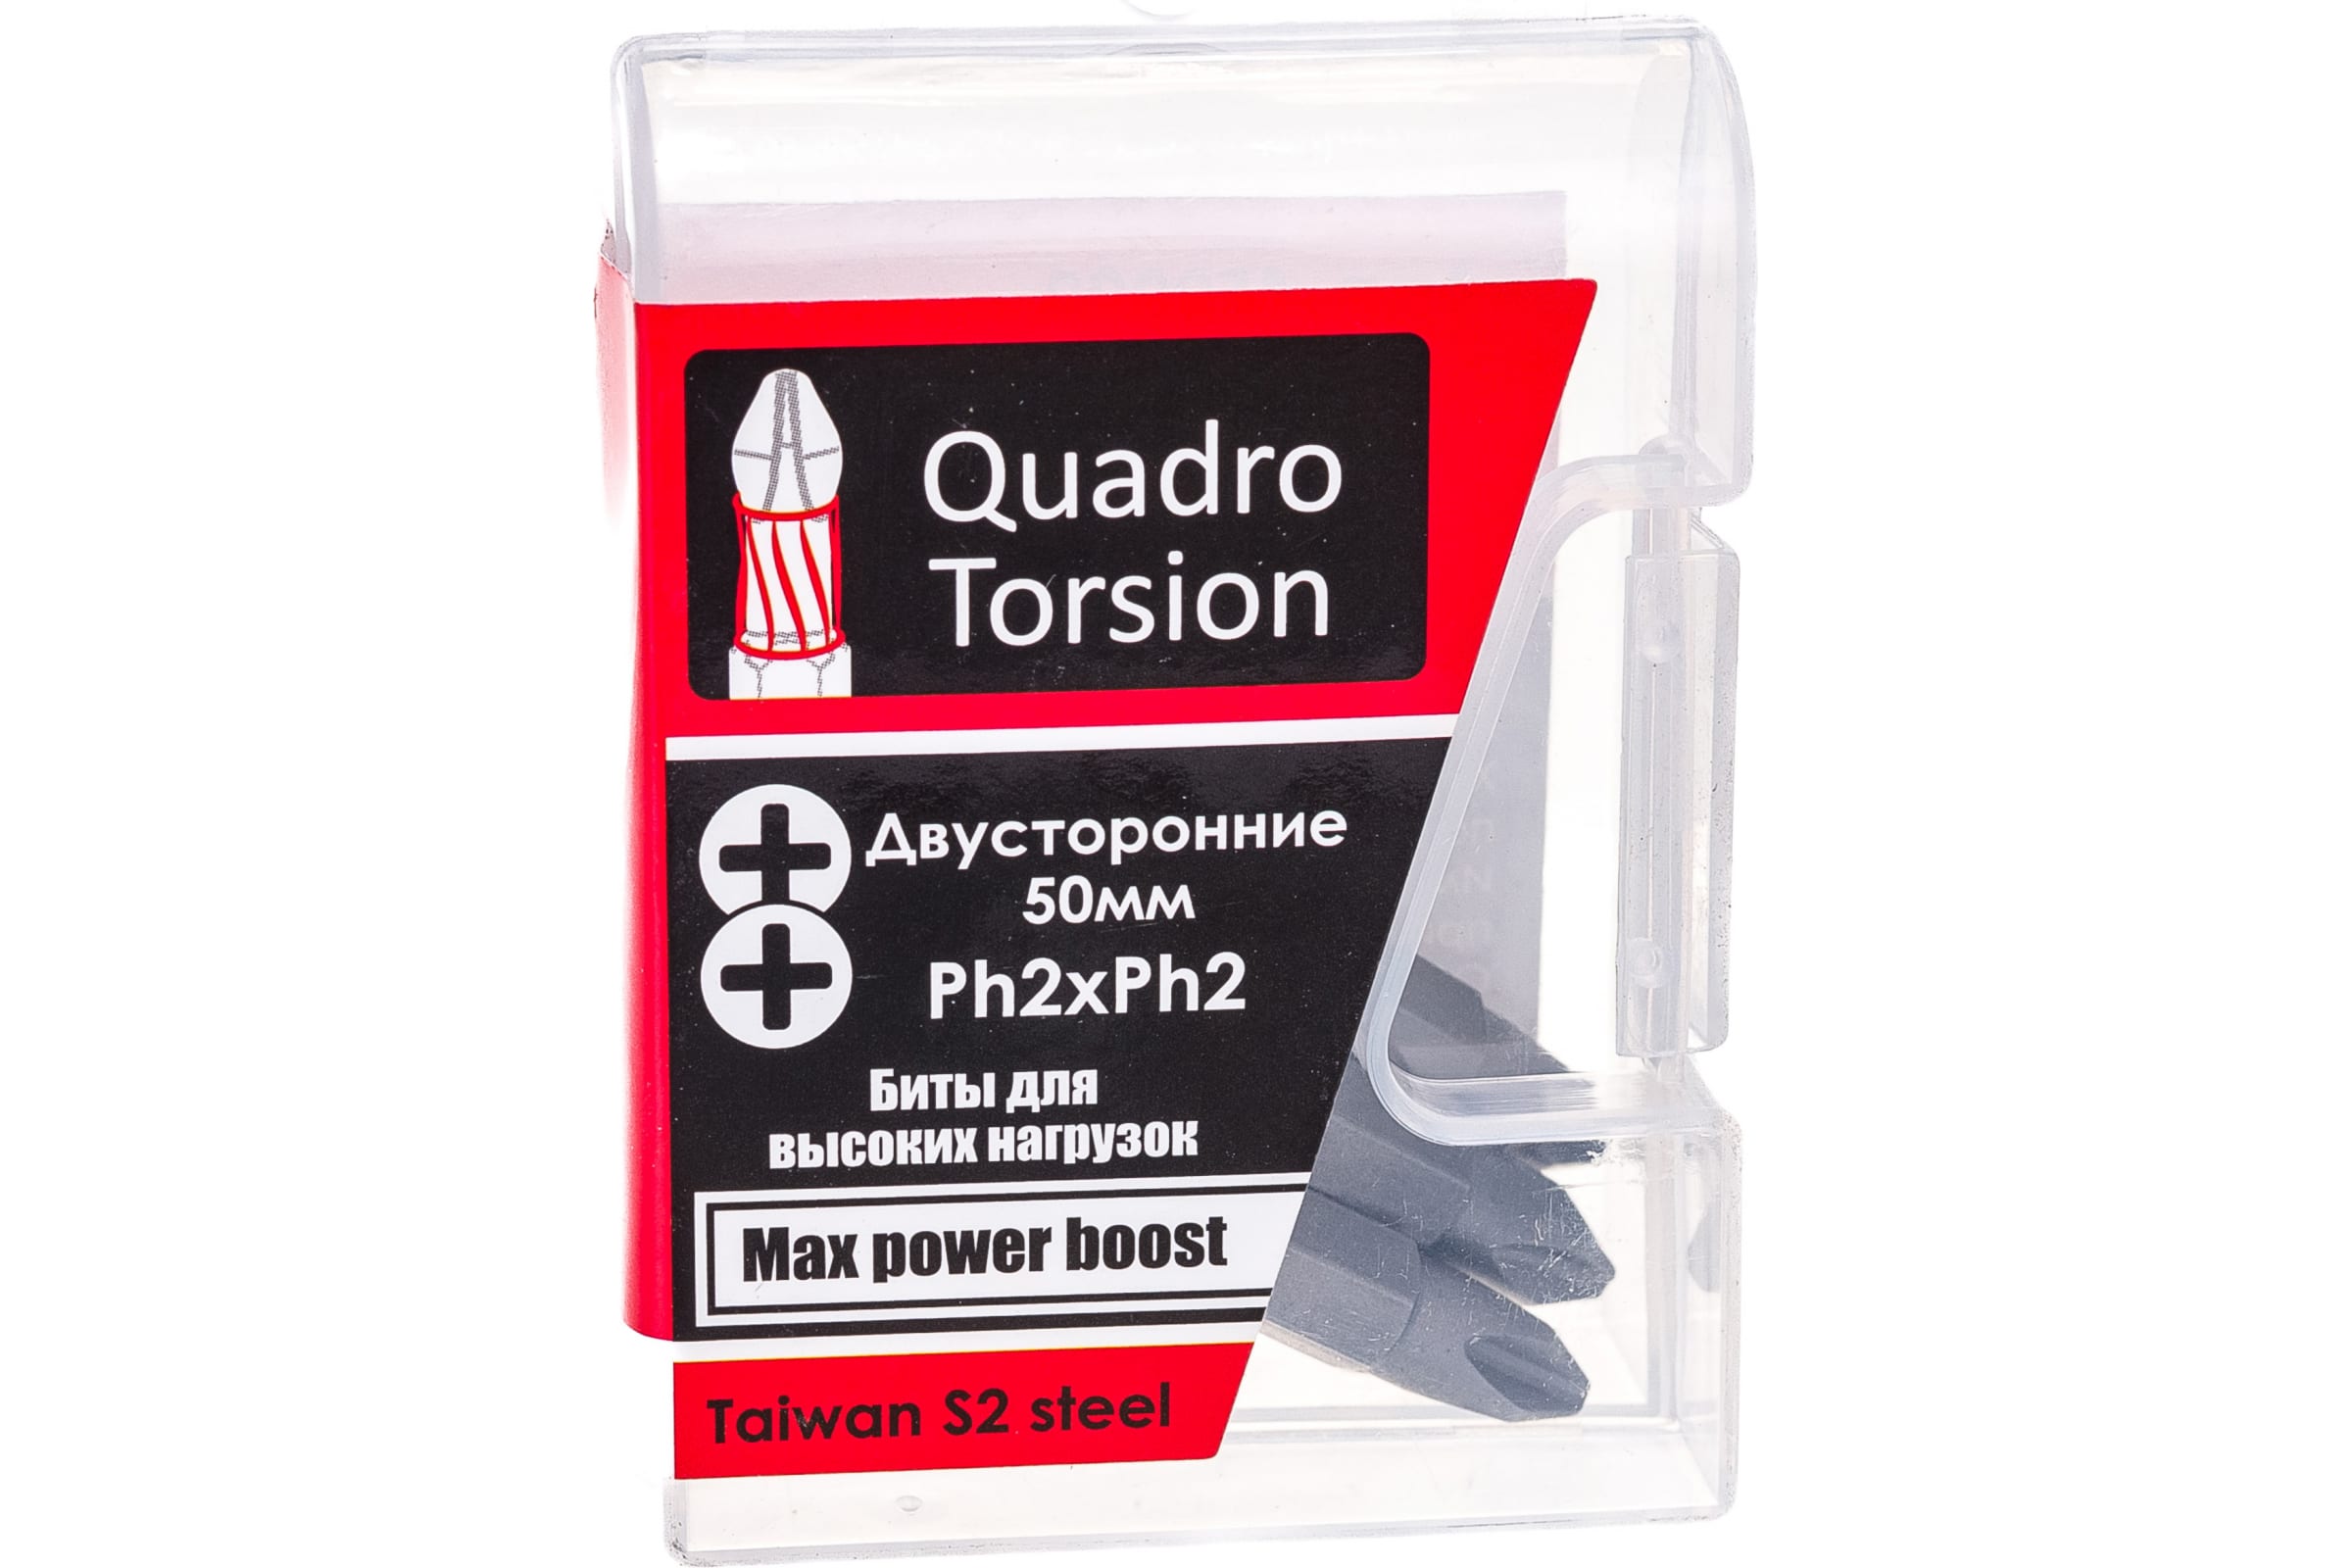 Quadro Torsion бита 1/4 двусторонняя Ph2xPh2 - 50мм 5шт./кор. 450022